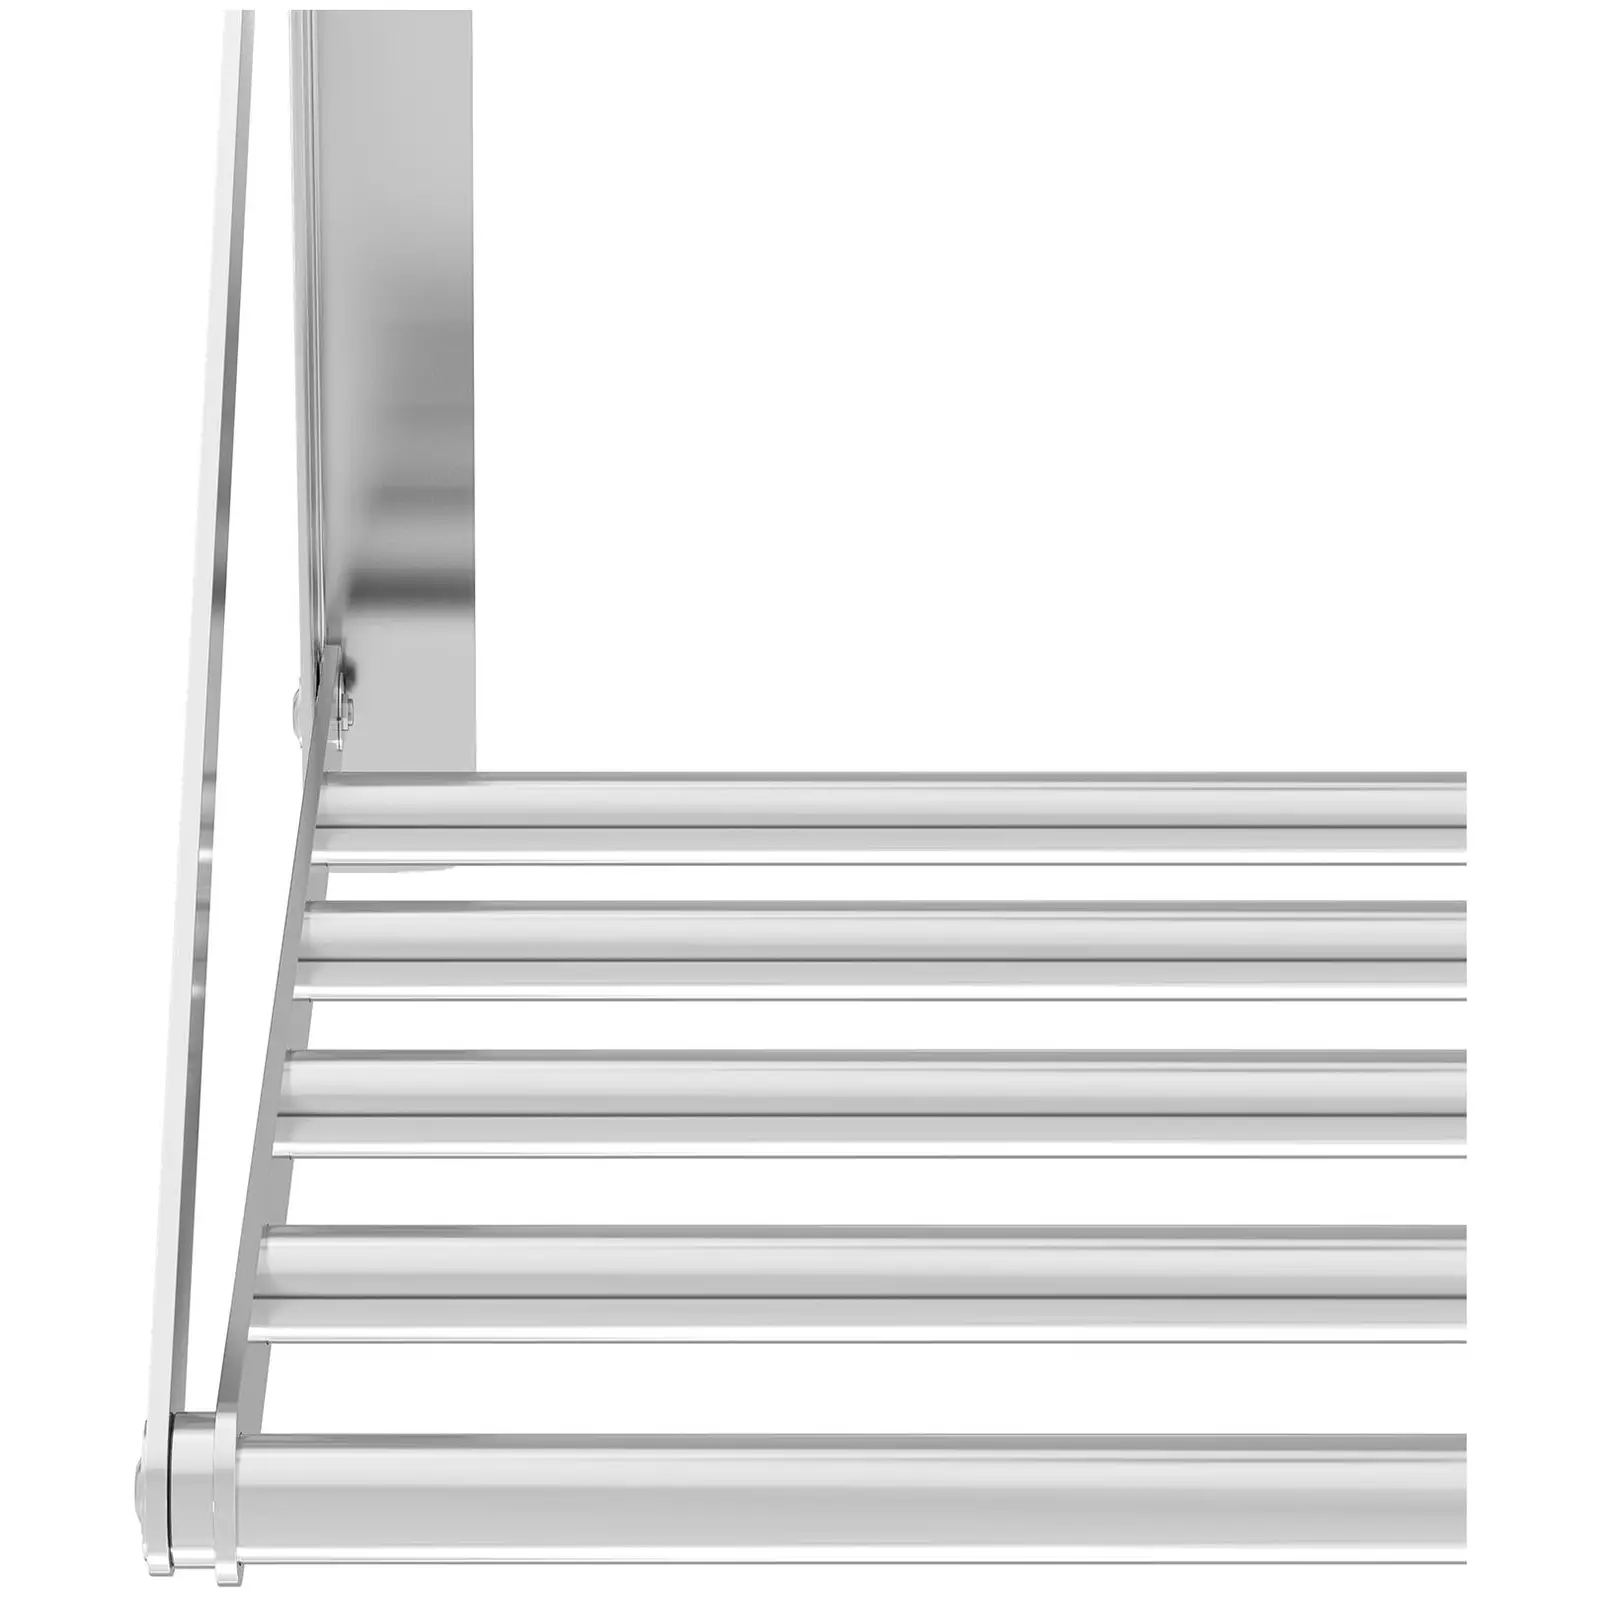 Fällbar vägghylla - Stänger - 60 x 45 cm - 40 kg - Rostfritt stål